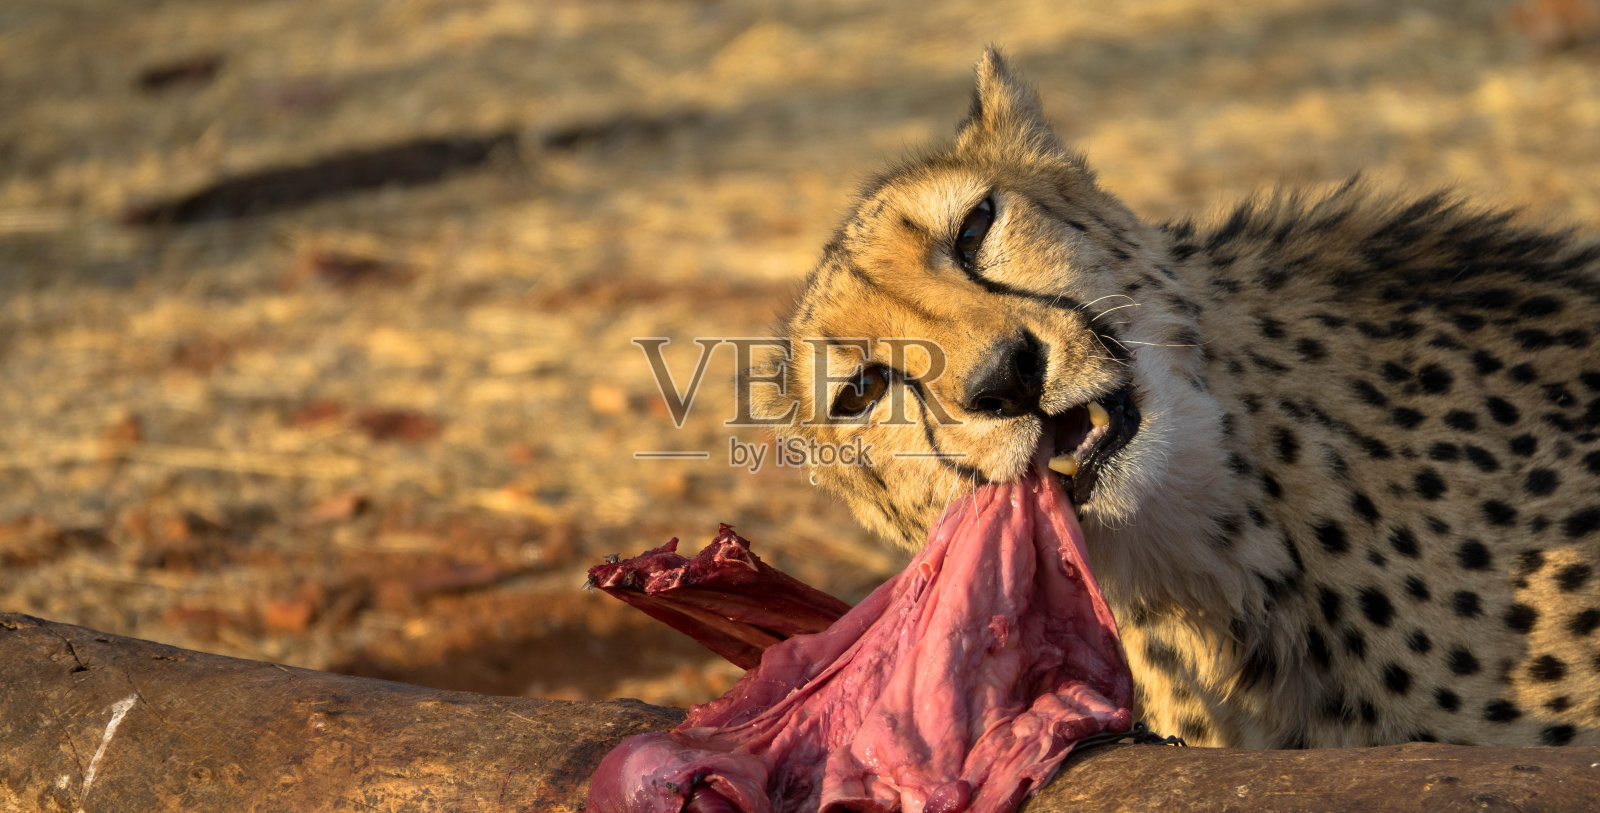 一只令人印象深刻的猎豹正在捕食猎物照片摄影图片